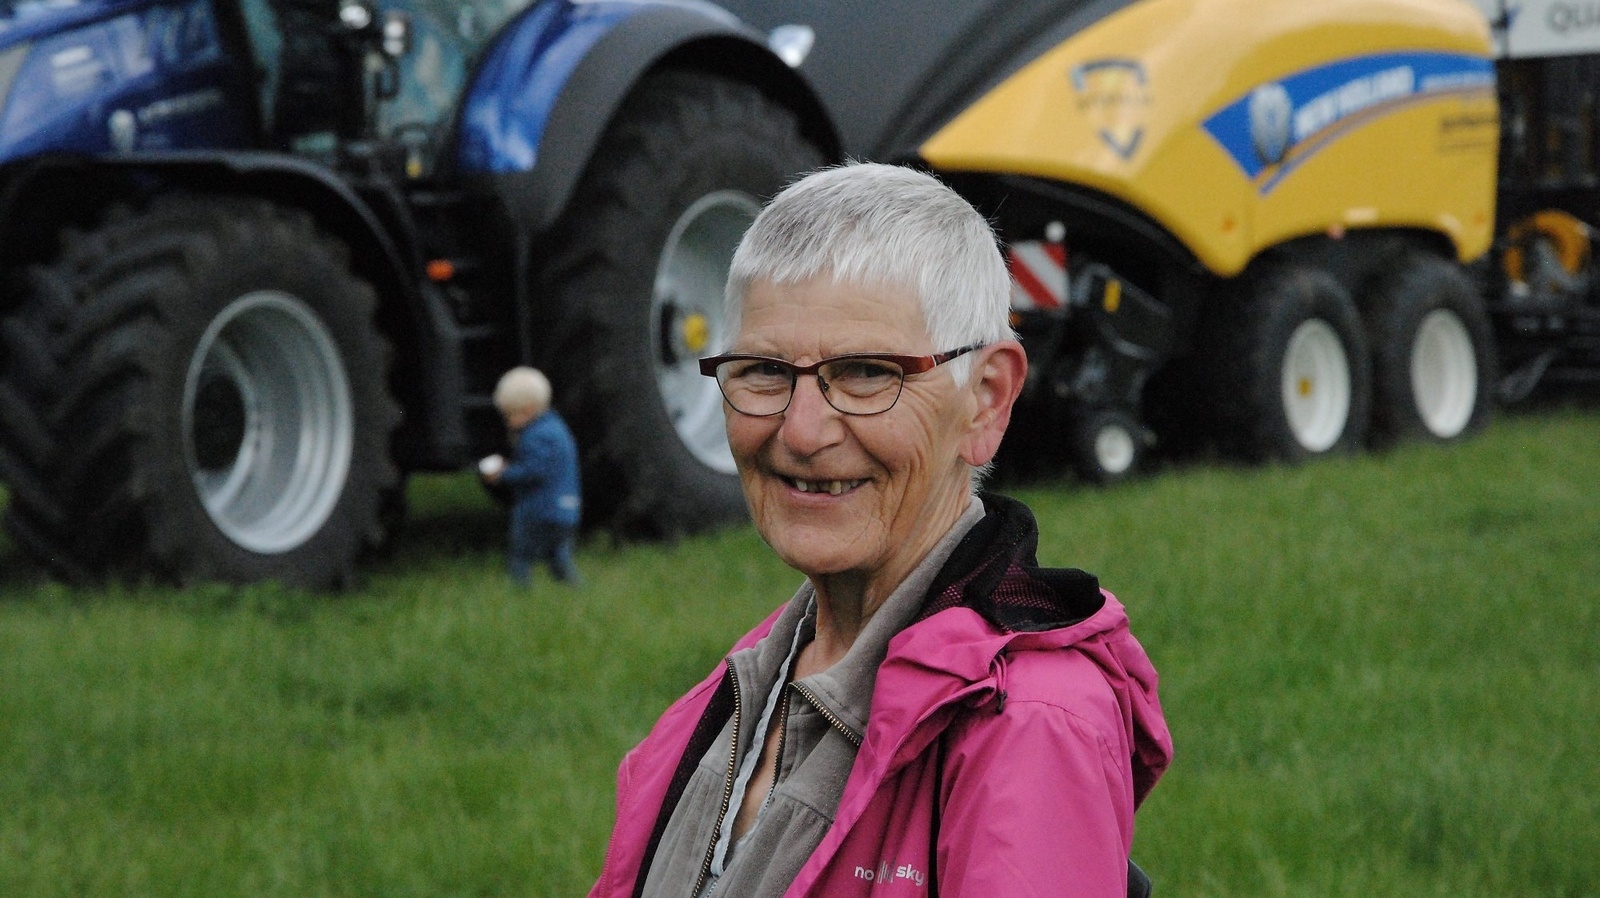 Inga Haraldsson från Höör uppskattade traktordagen. – Som gammal bondtös väcks minnena till liv, sade hon och skrattade. Foto: Tobias Lagerholm